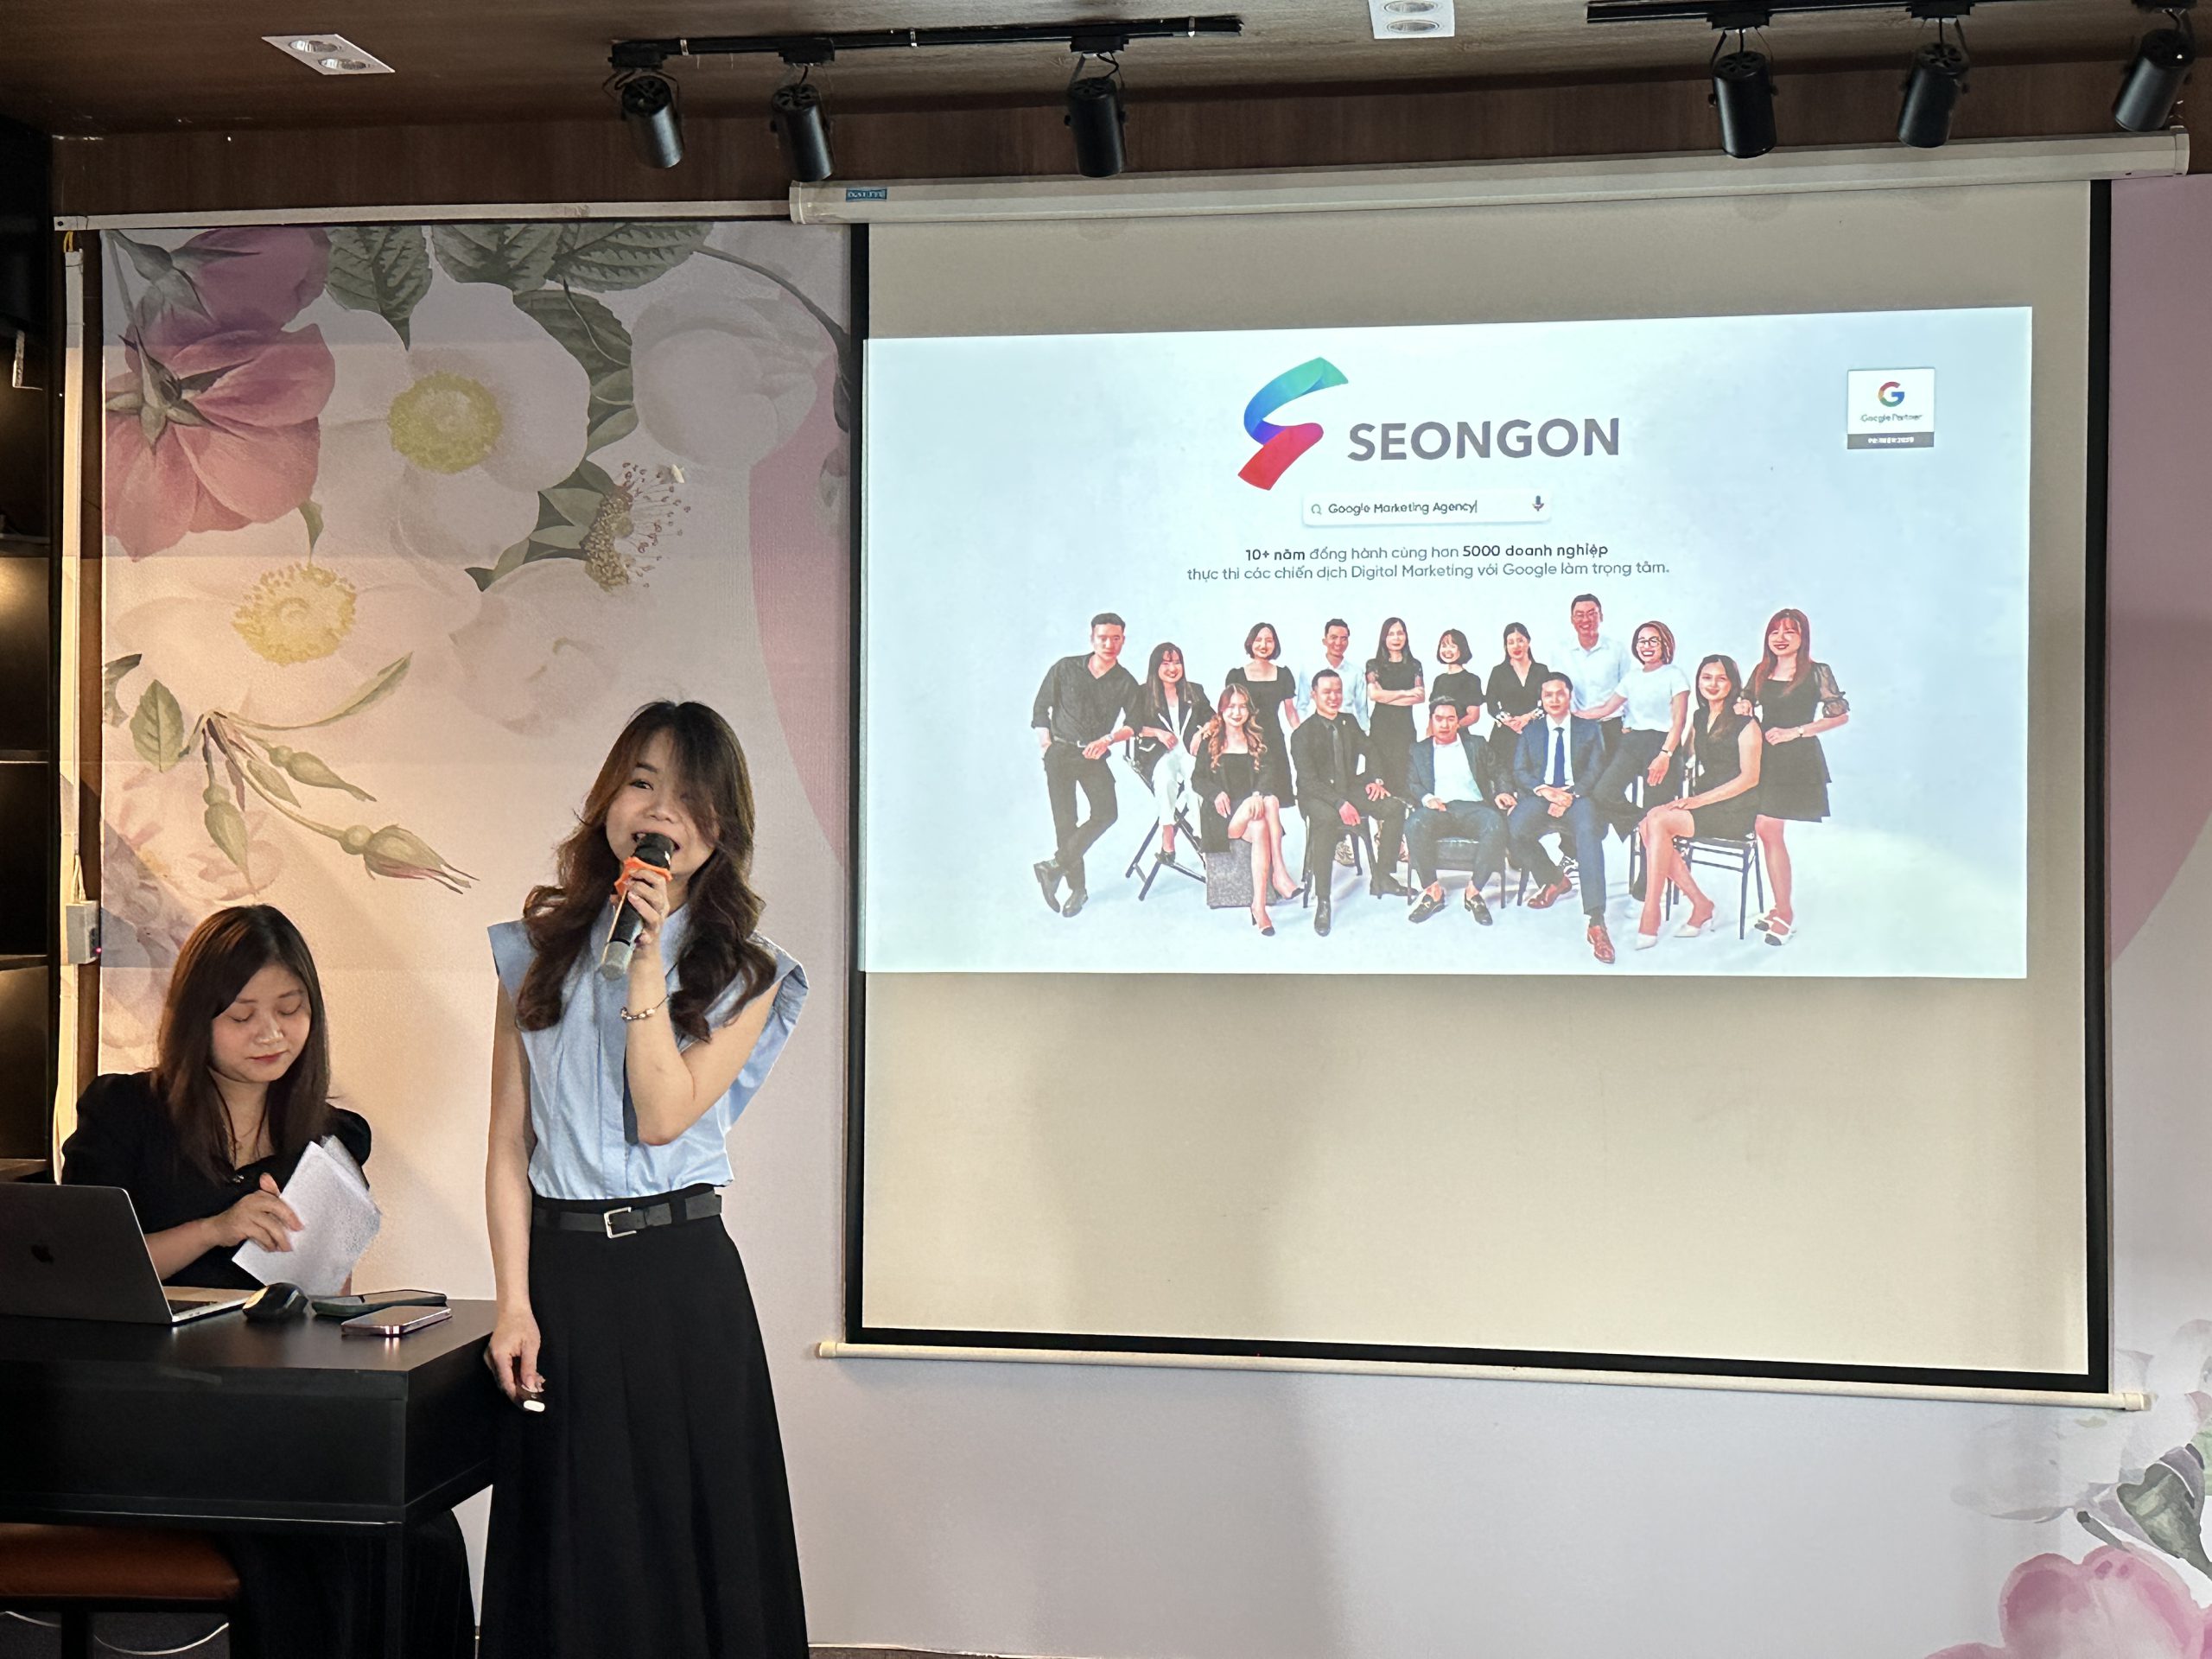 Chị Bùi Ngọc Phương Thảo đang chia sẻ tổng quan về công ty SEONGON